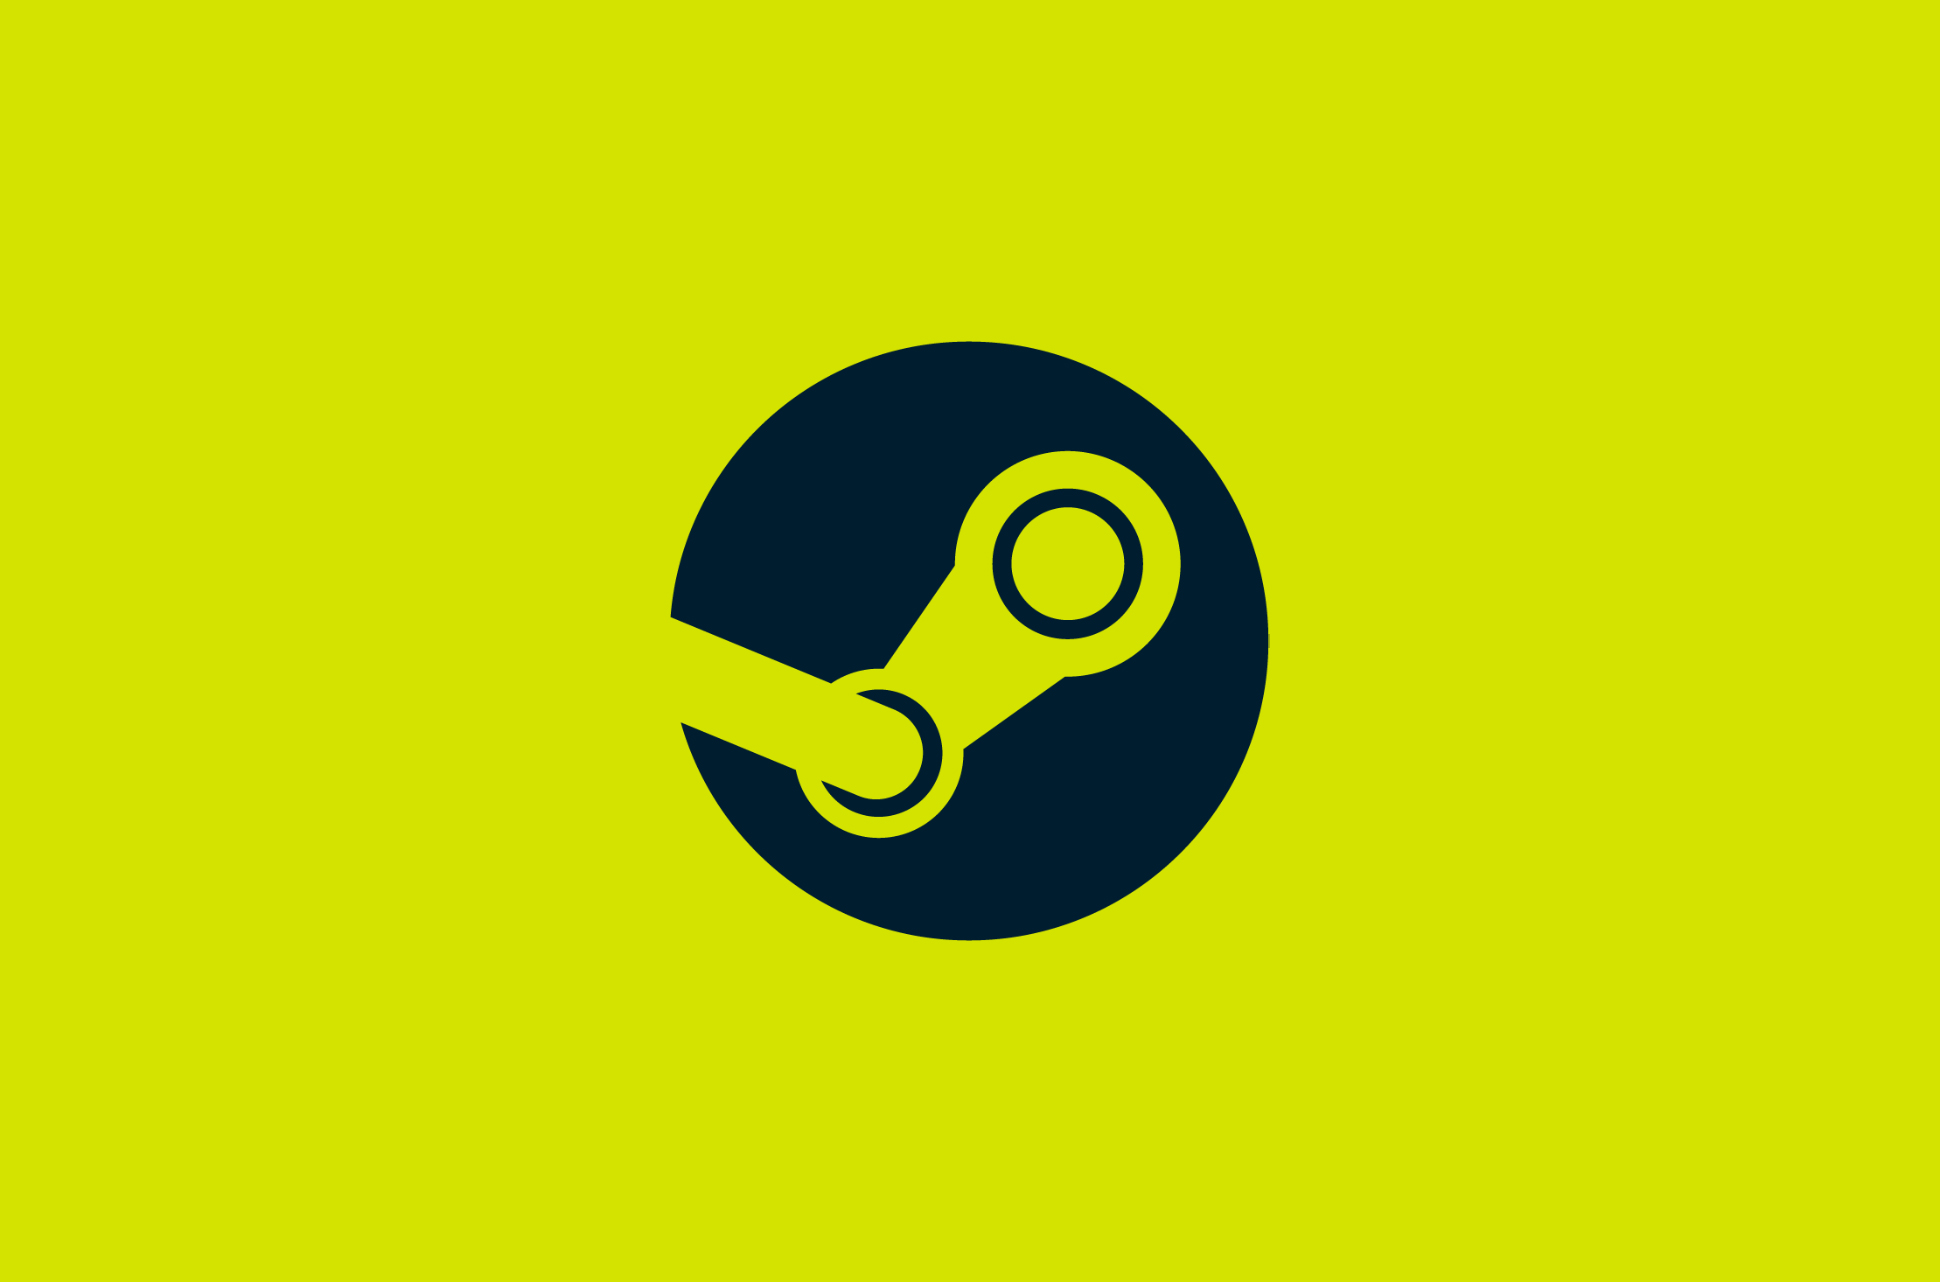 Steam logo.